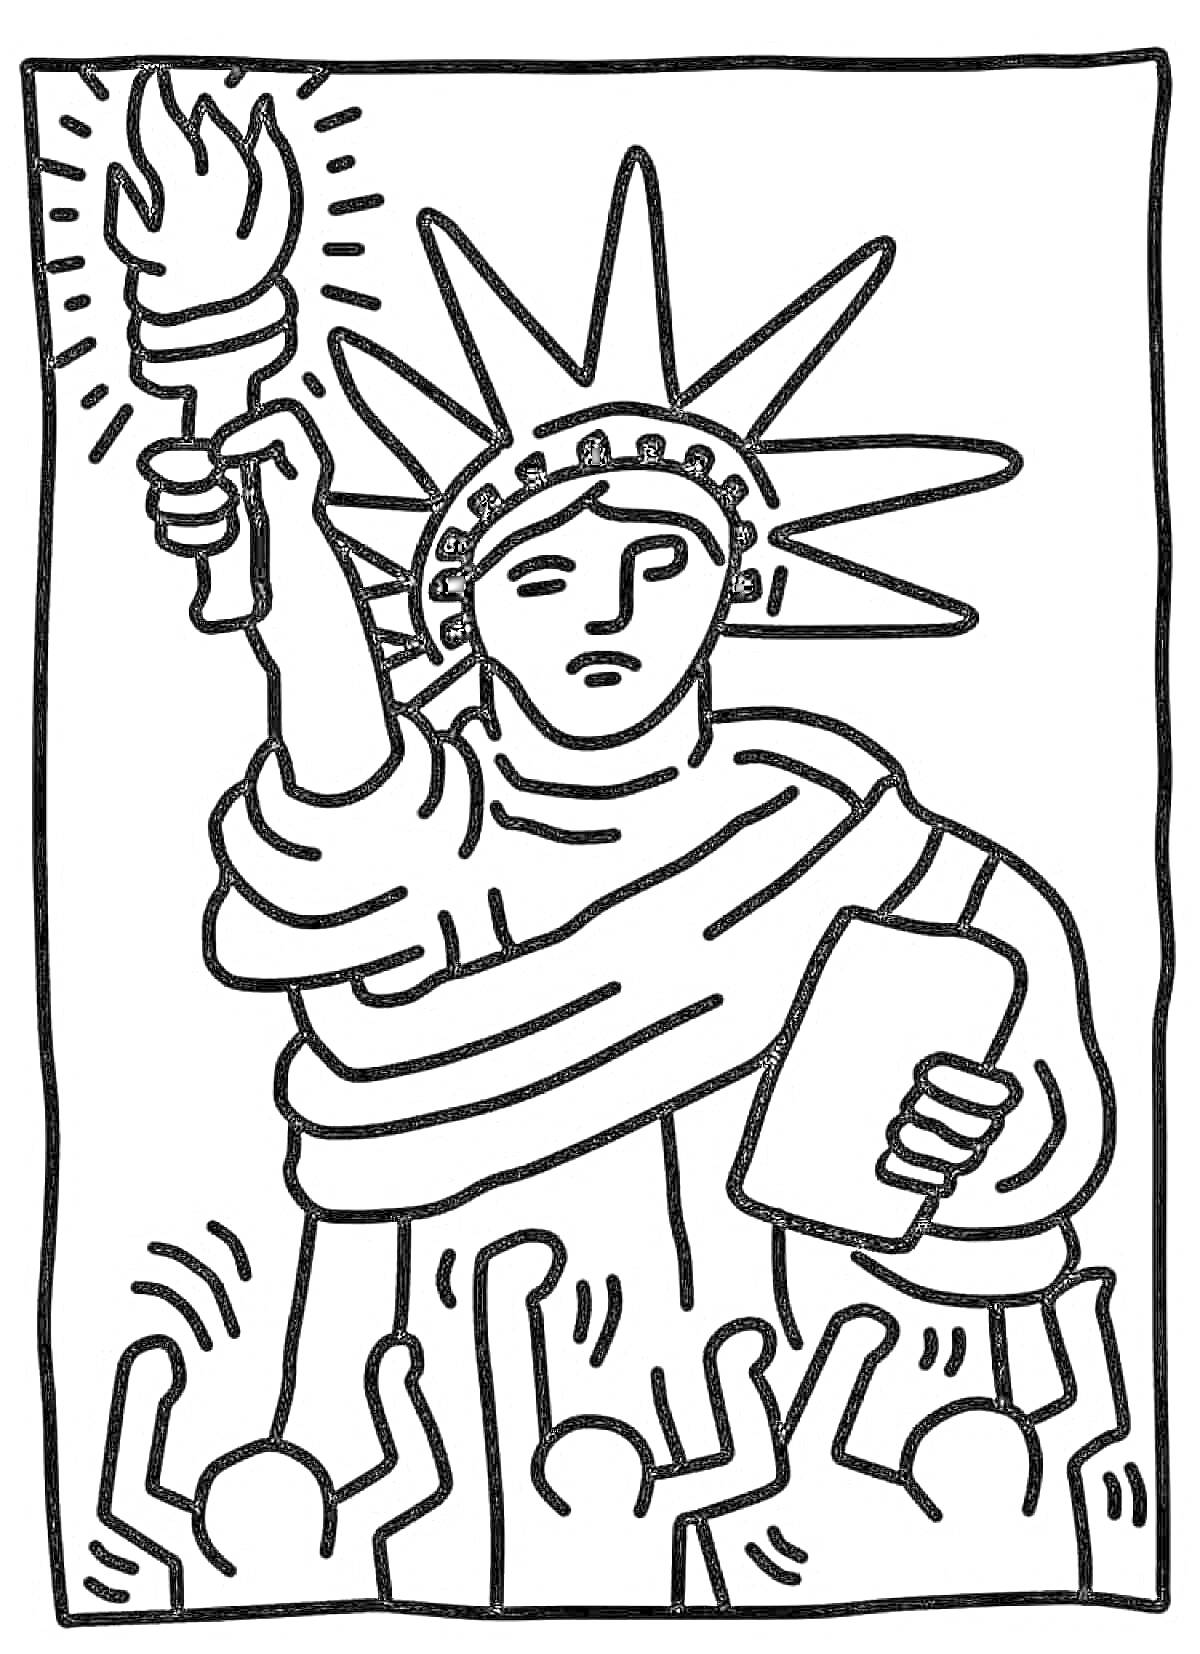 Статуя Свободы с поднятым факелом в окружении людей, простая раскраска